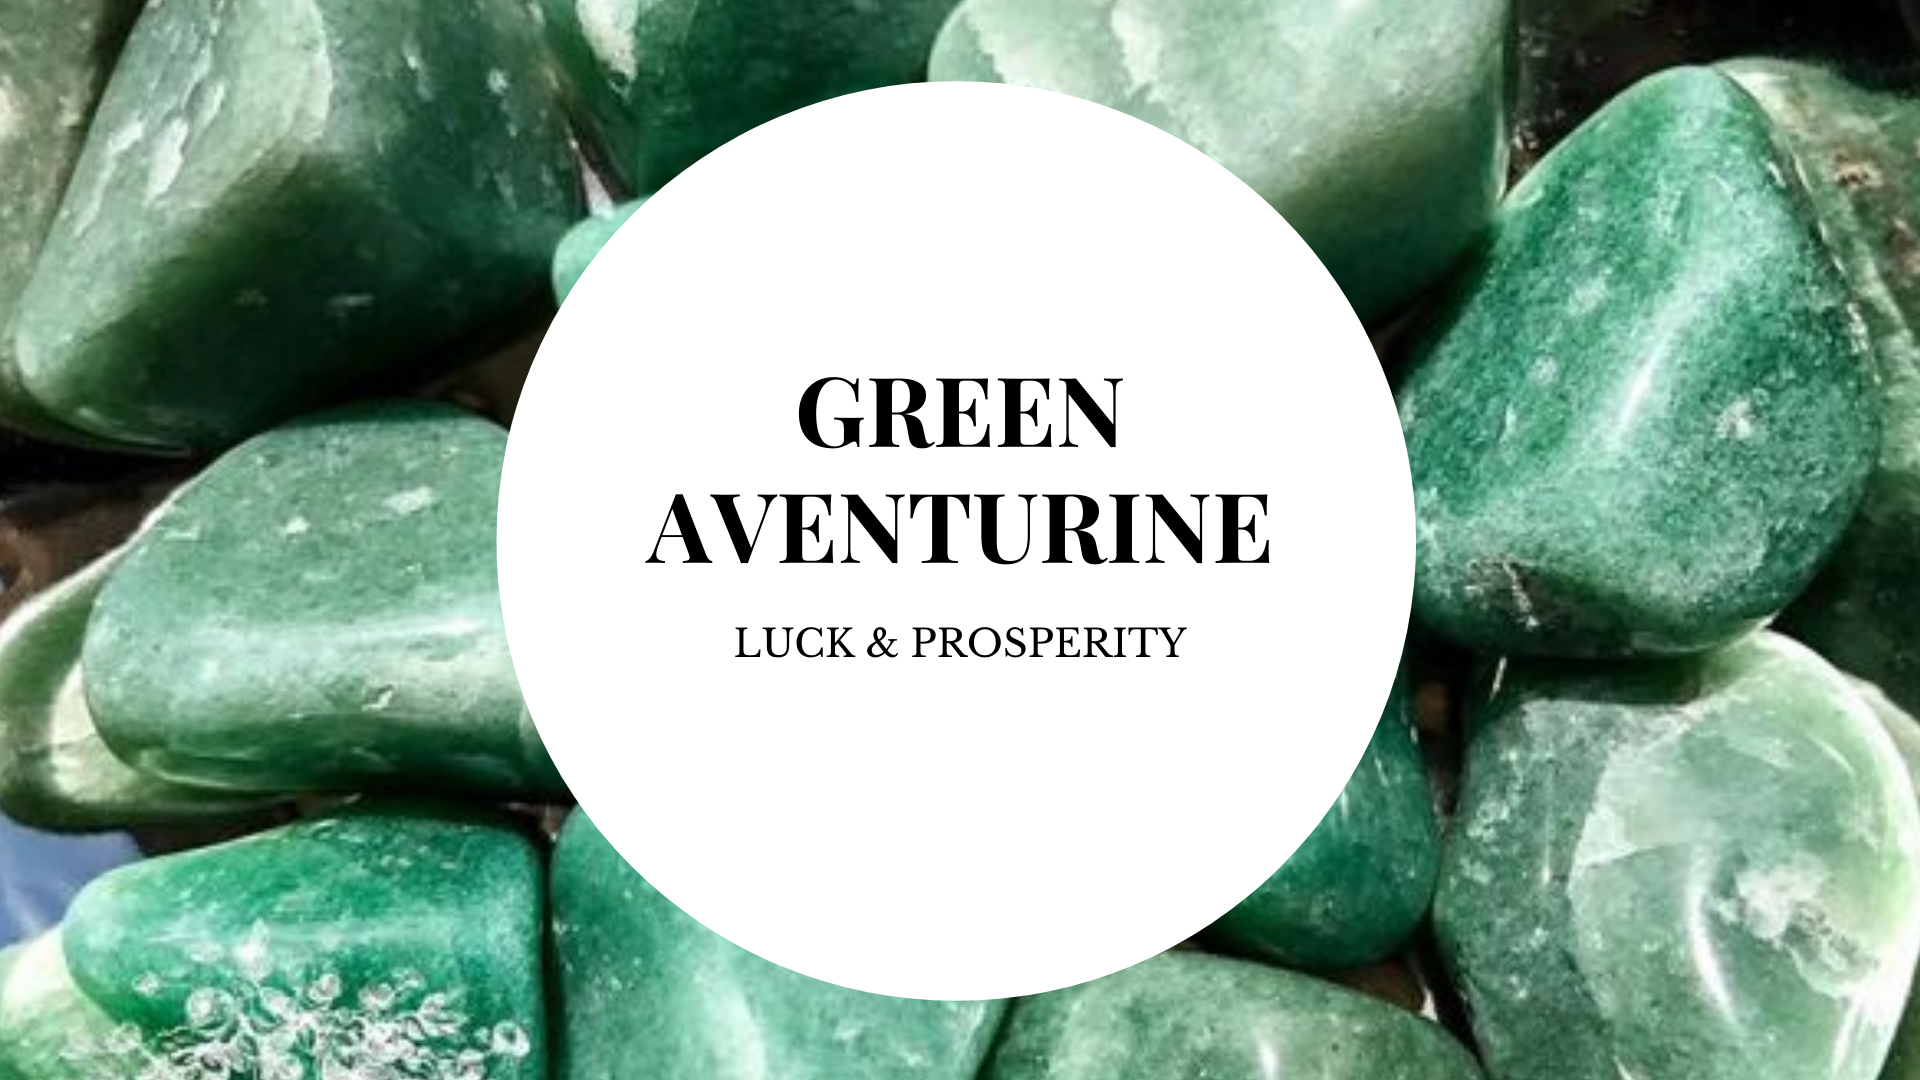 Propiedades curativas de la aventurina verde | Significado de la aventurina verde | Beneficios de la Aventurina Verde - Cristales Mágicos